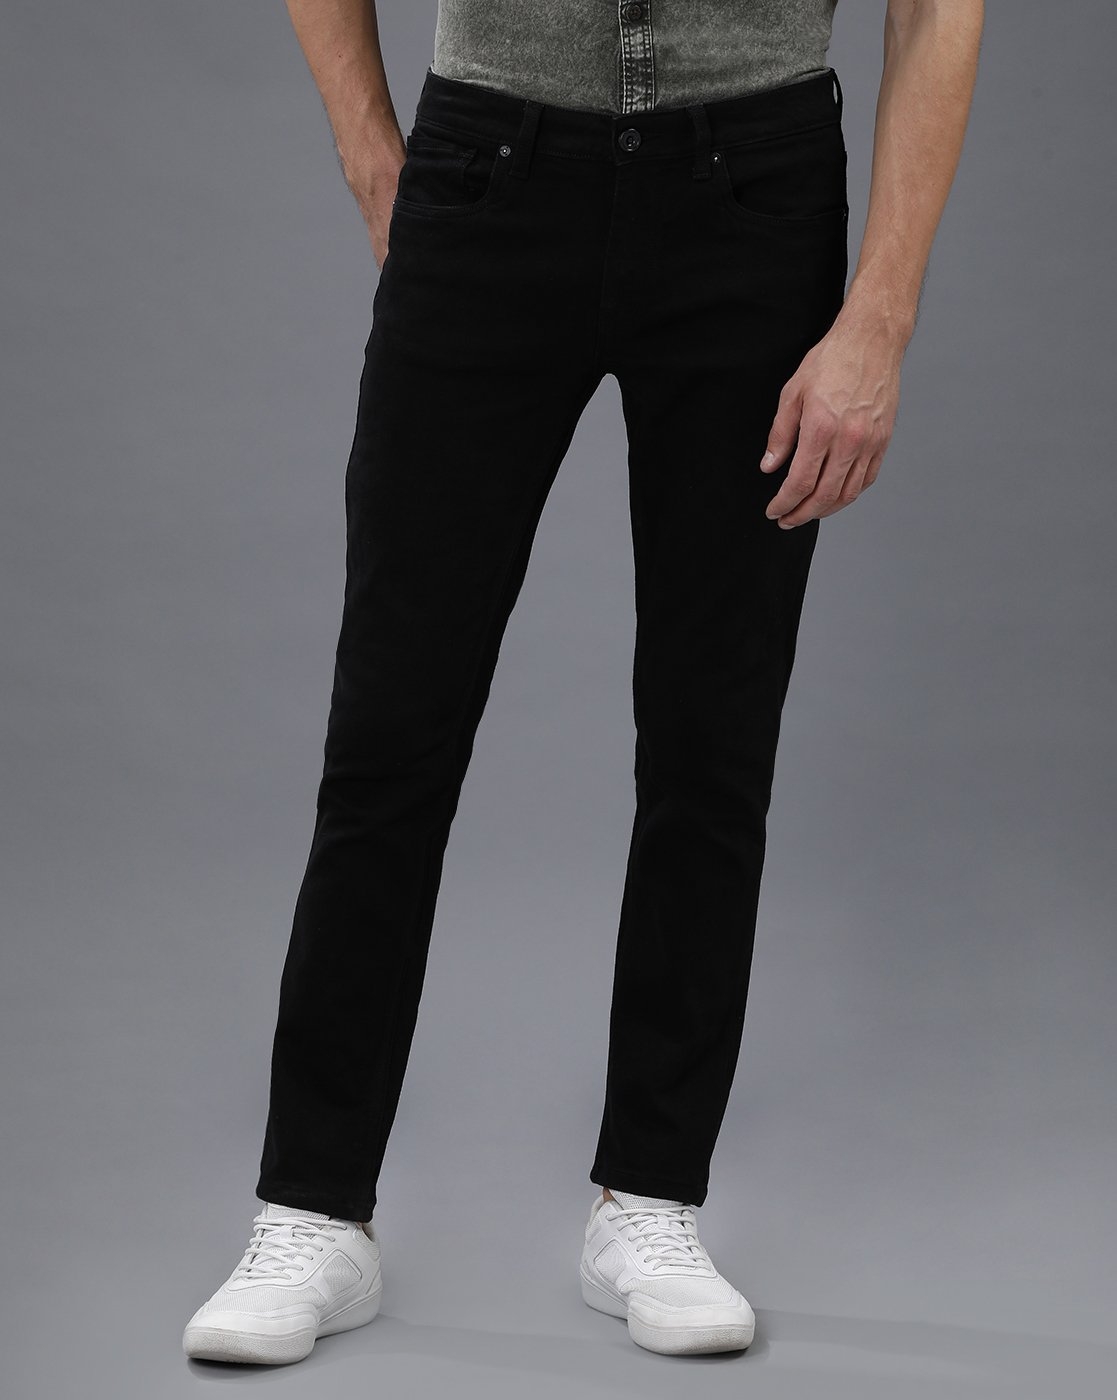 VOI JEANS | Men's Black Casual Clean Look Jeans ( VOJN1604 )